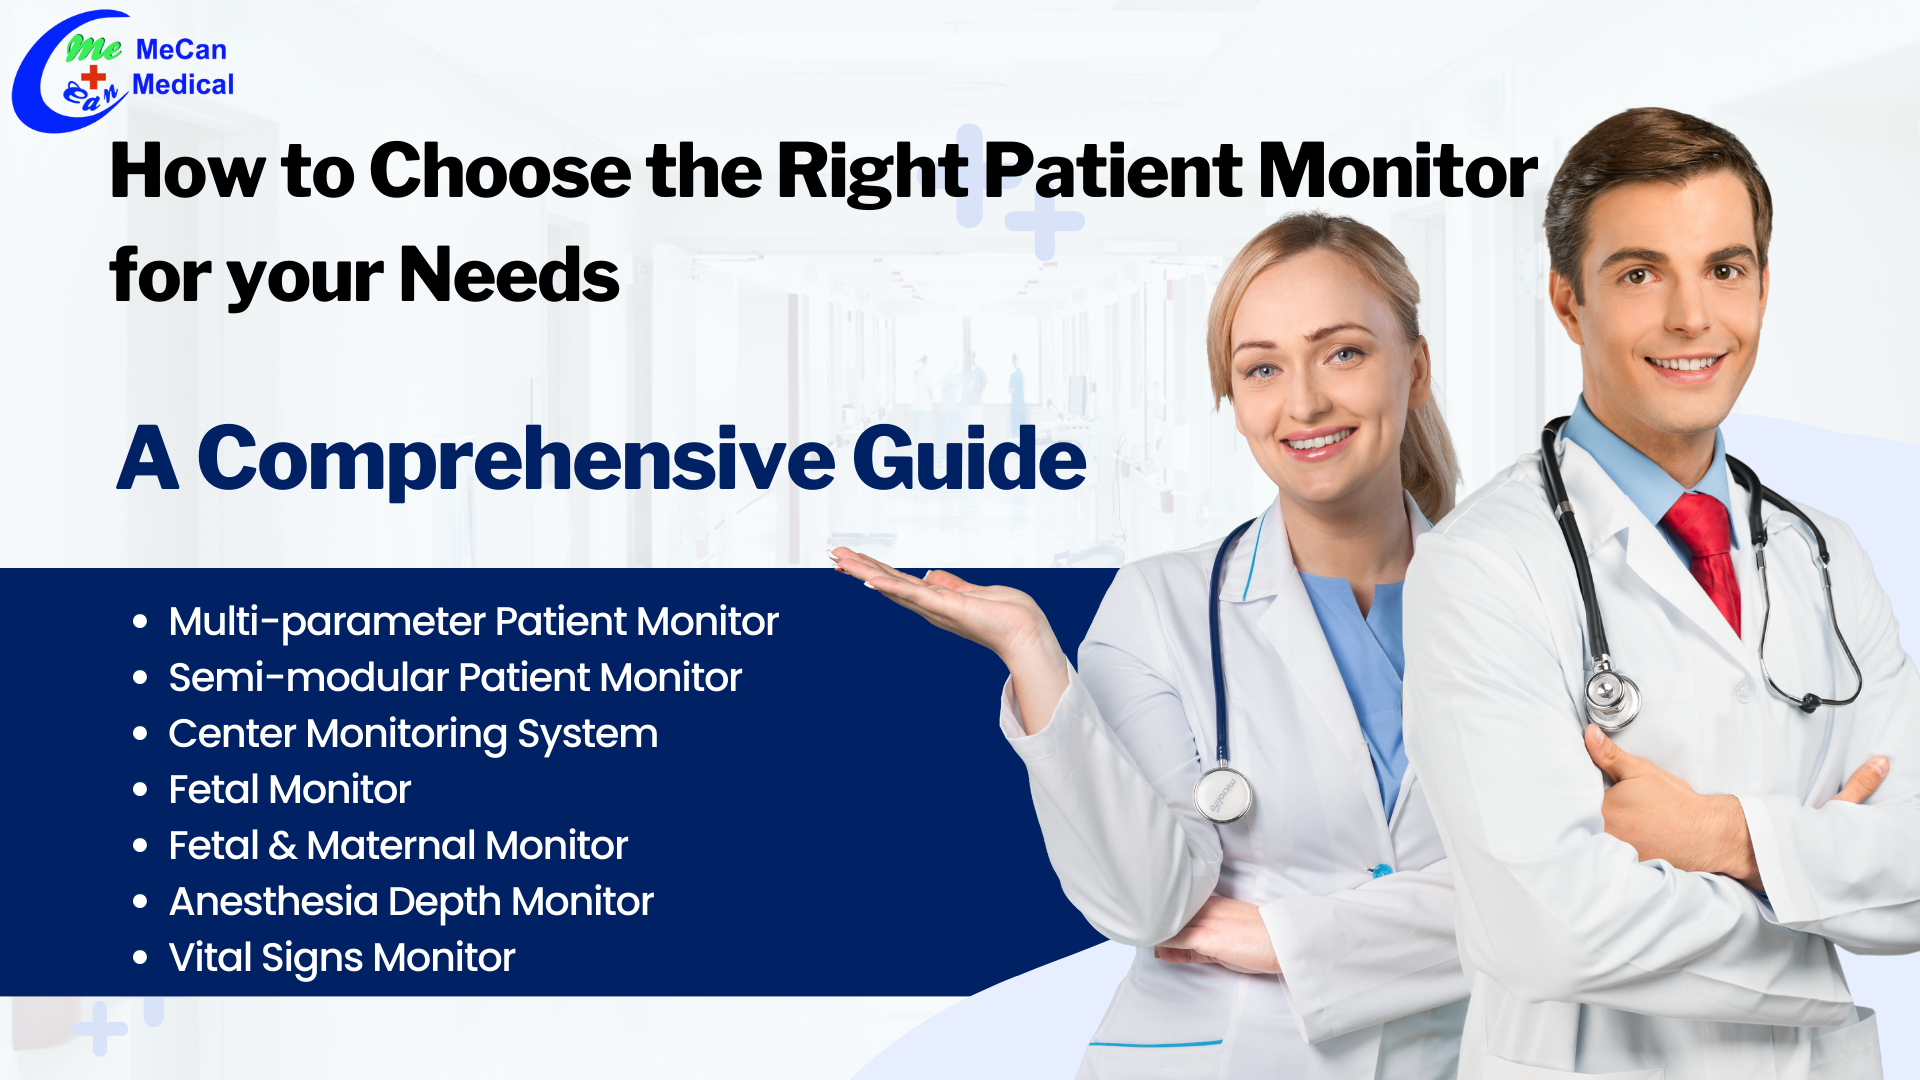 Como escolher o monitor de paciente certo para suas necessidades: um guia abrangente